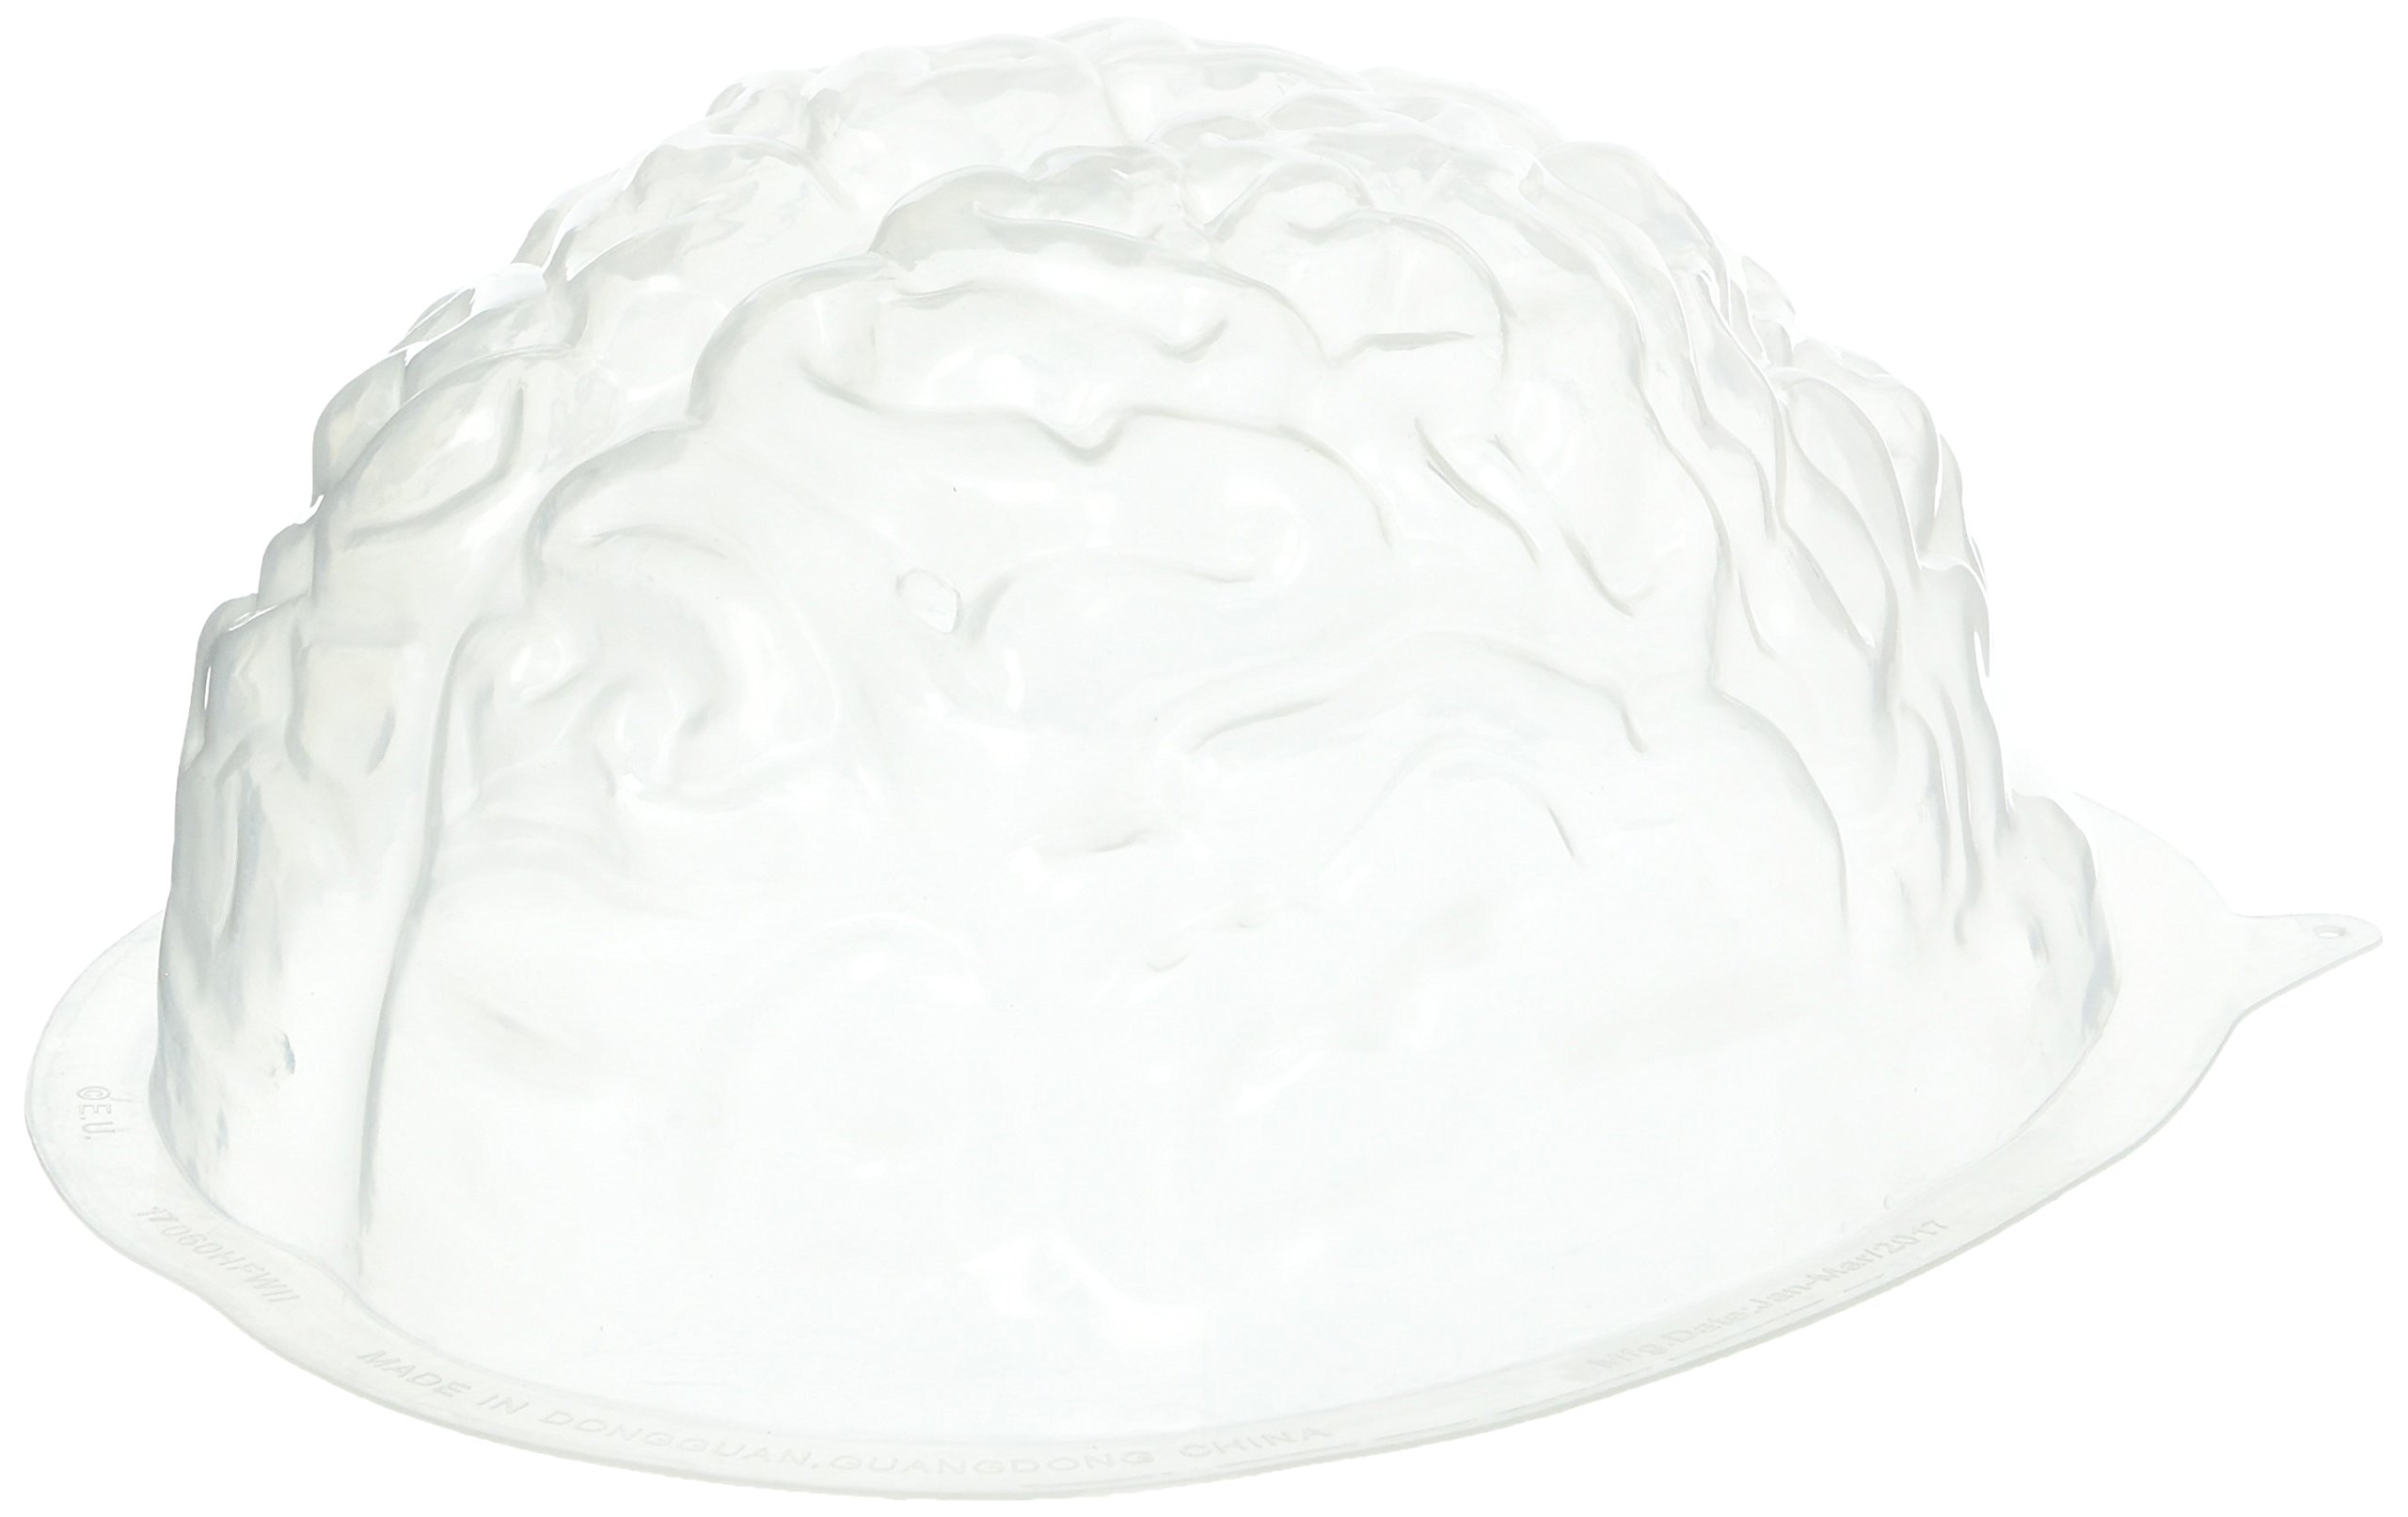 Plastic Brain Jello Mold